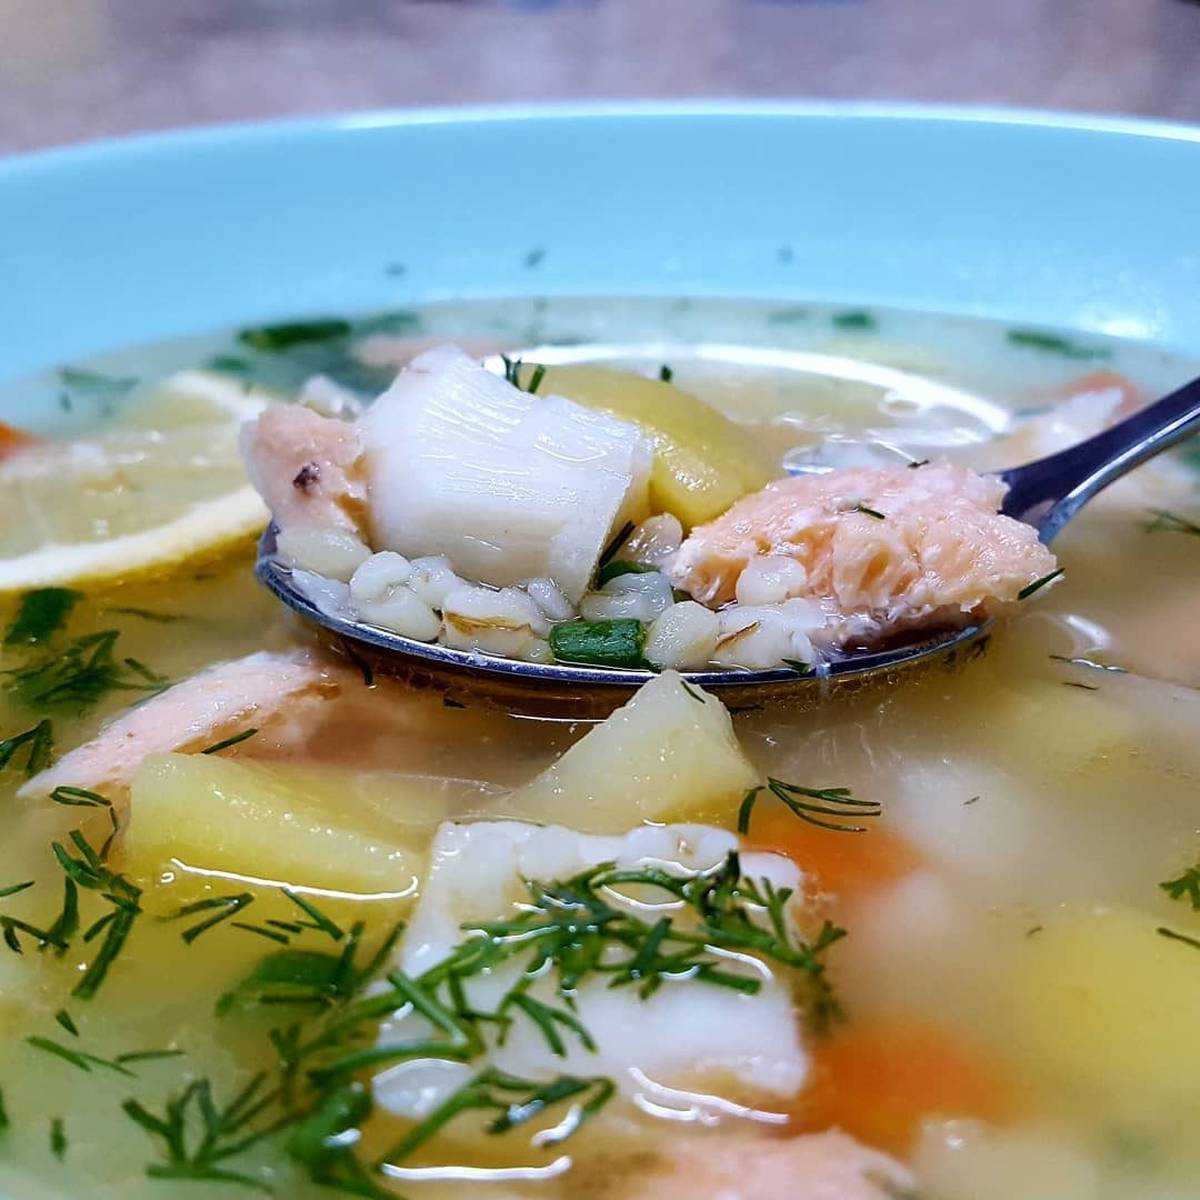 Уха из головы горбуши просто и вкусно: 5 рецептов рыбного супа из голов
уха из головы горбуши просто и вкусно: 5 рецептов рыбного супа из голов